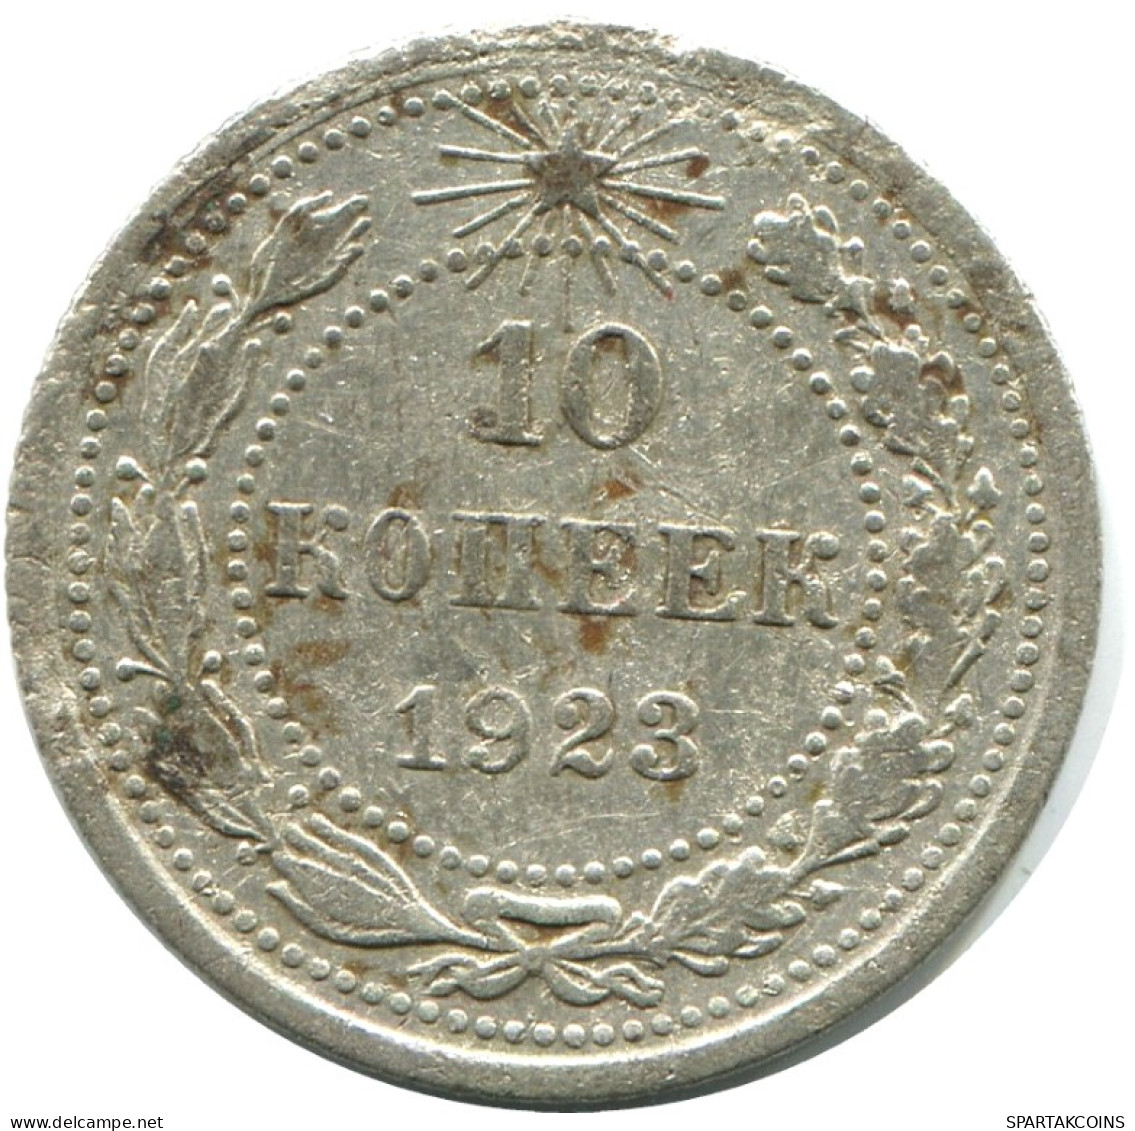 10 KOPEKS 1923 RUSSLAND RUSSIA RSFSR SILBER Münze HIGH GRADE #AE899.4.D.A - Russie